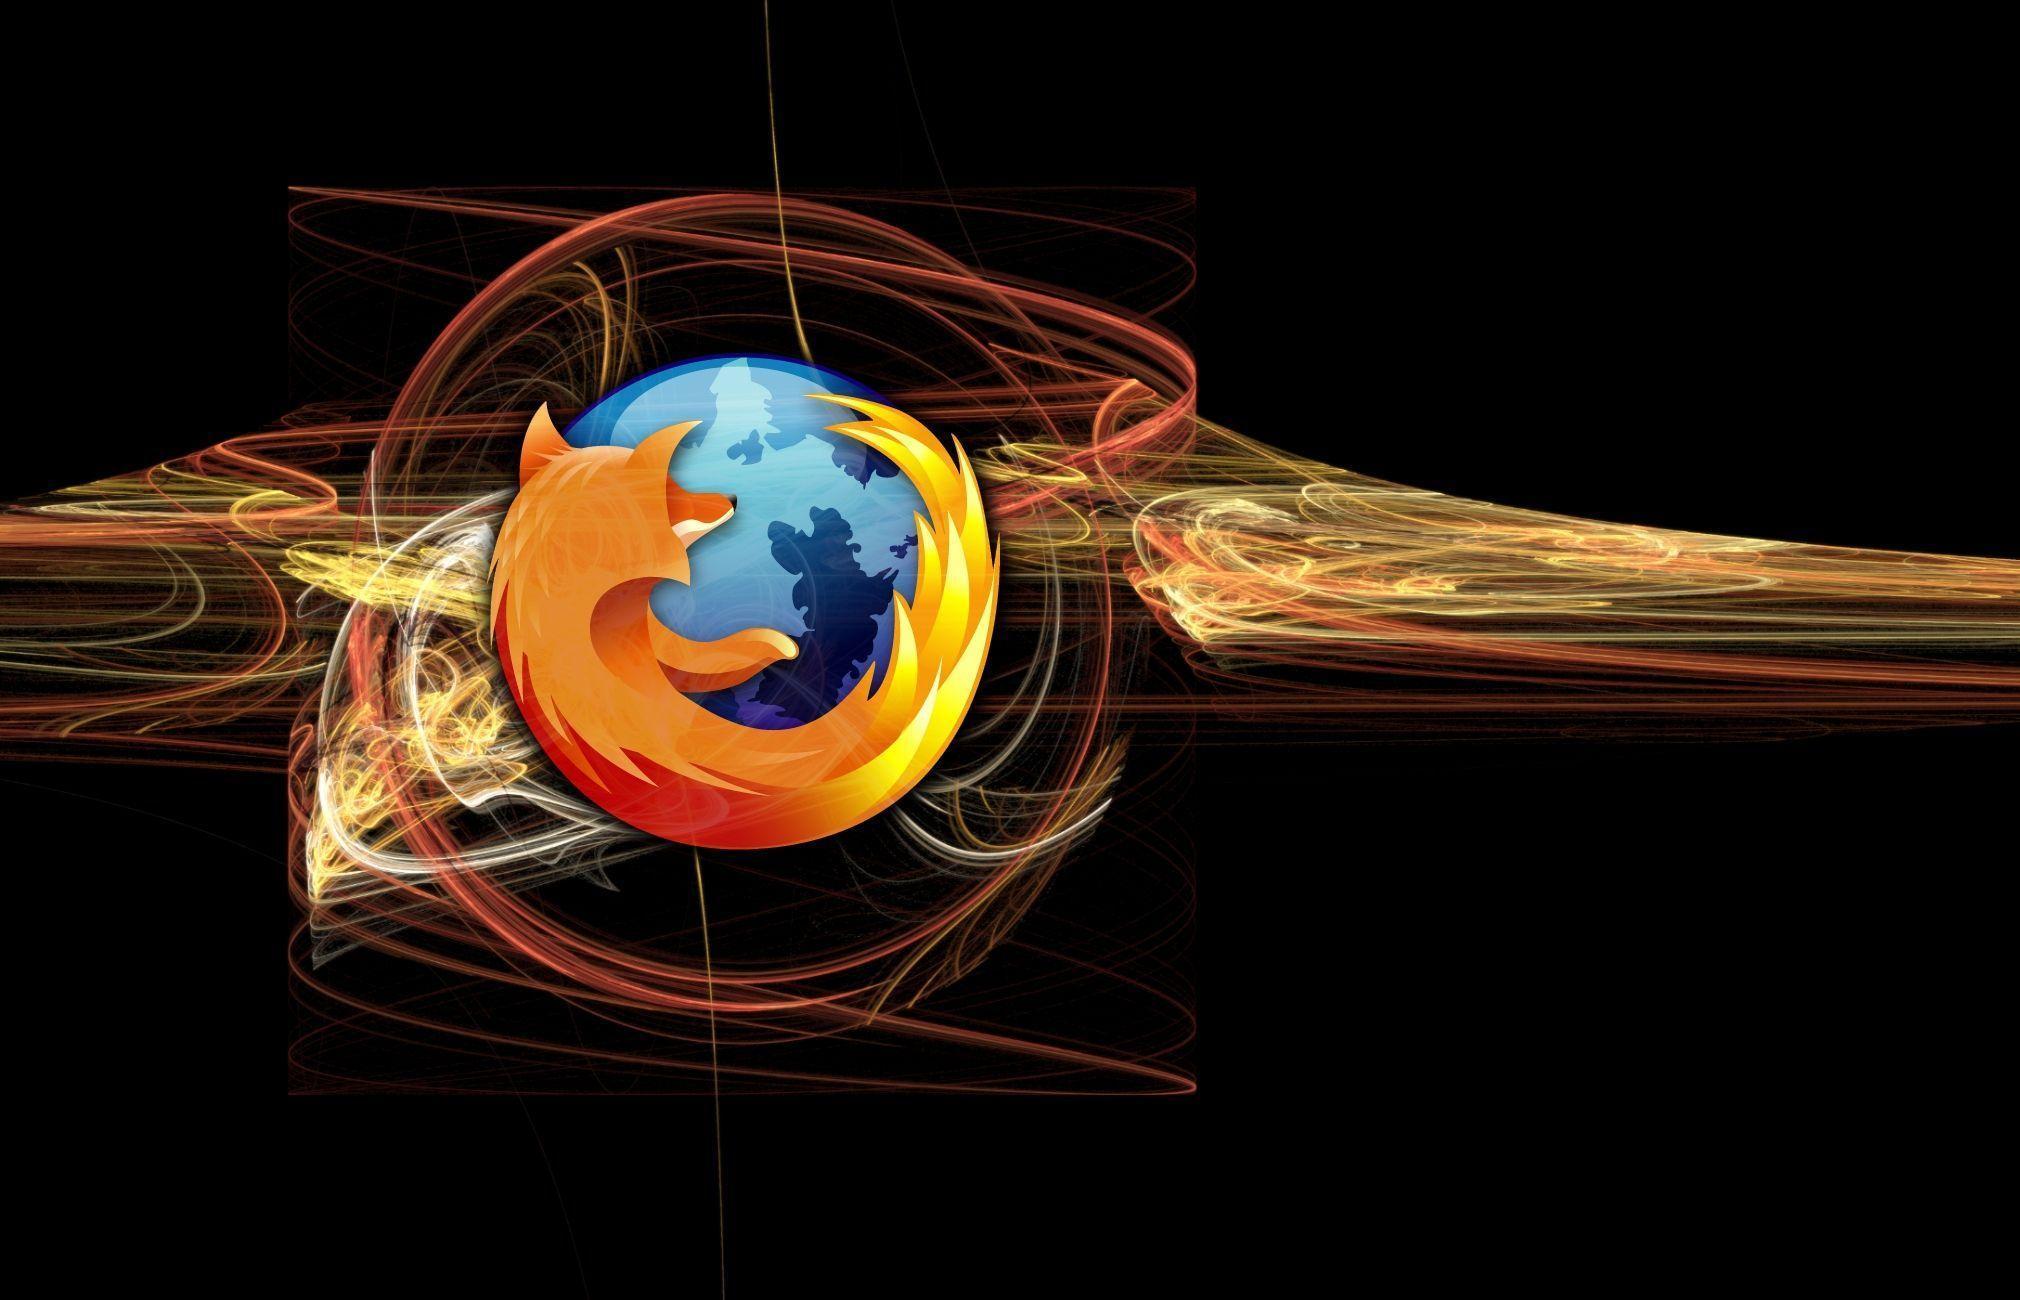 Mozilla Firefox Wallpaper. HD Wallpaper Early